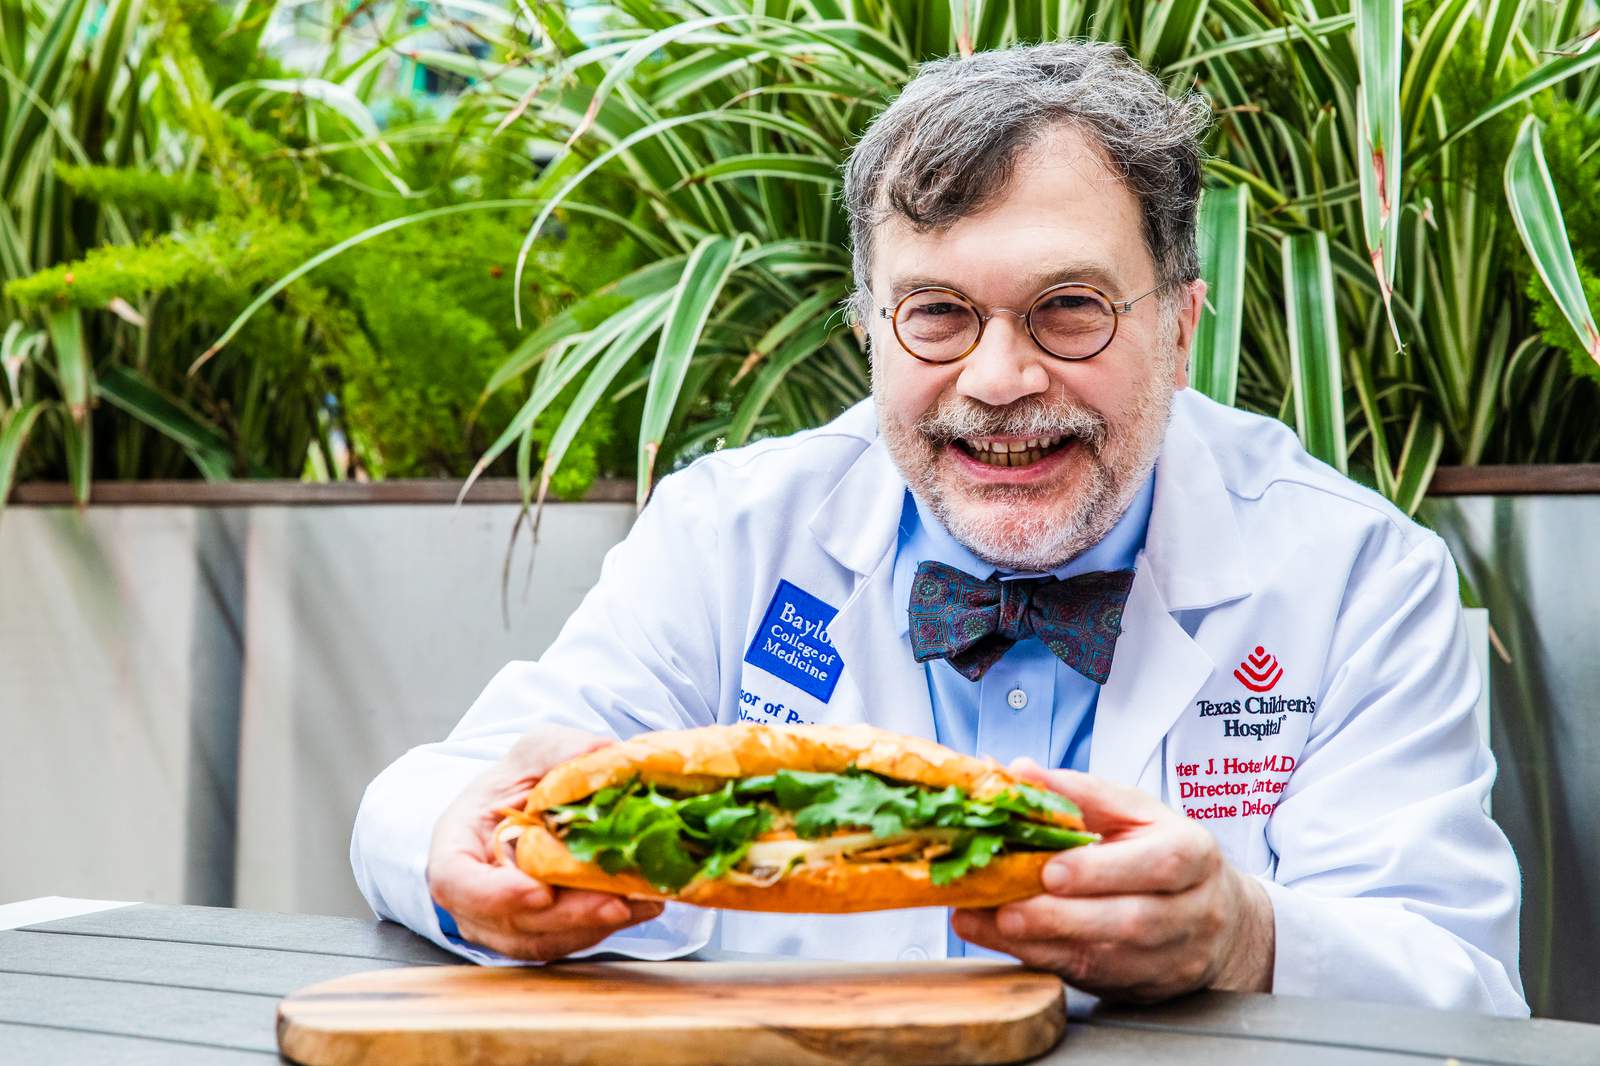 Antone’s Famous Po’ Boys names new sandwich after Houston’s Dr. Peter Hotez